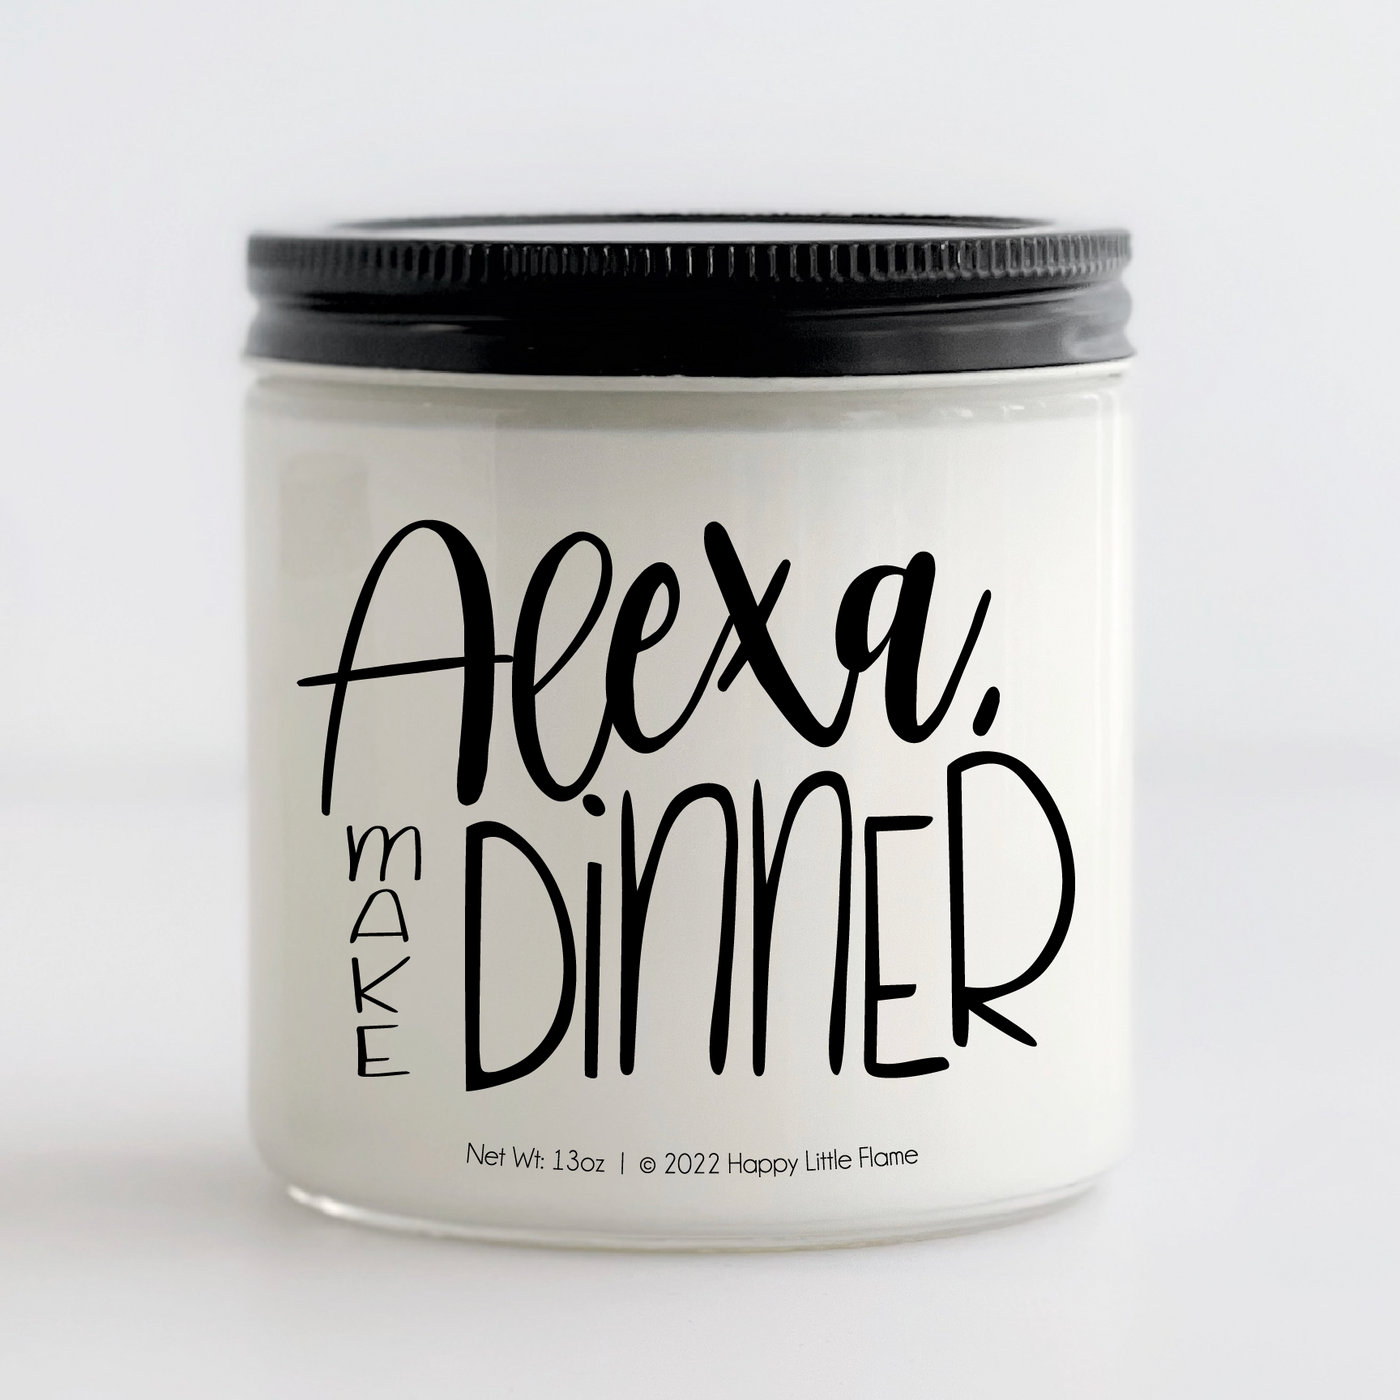 Alexa Make Dinner